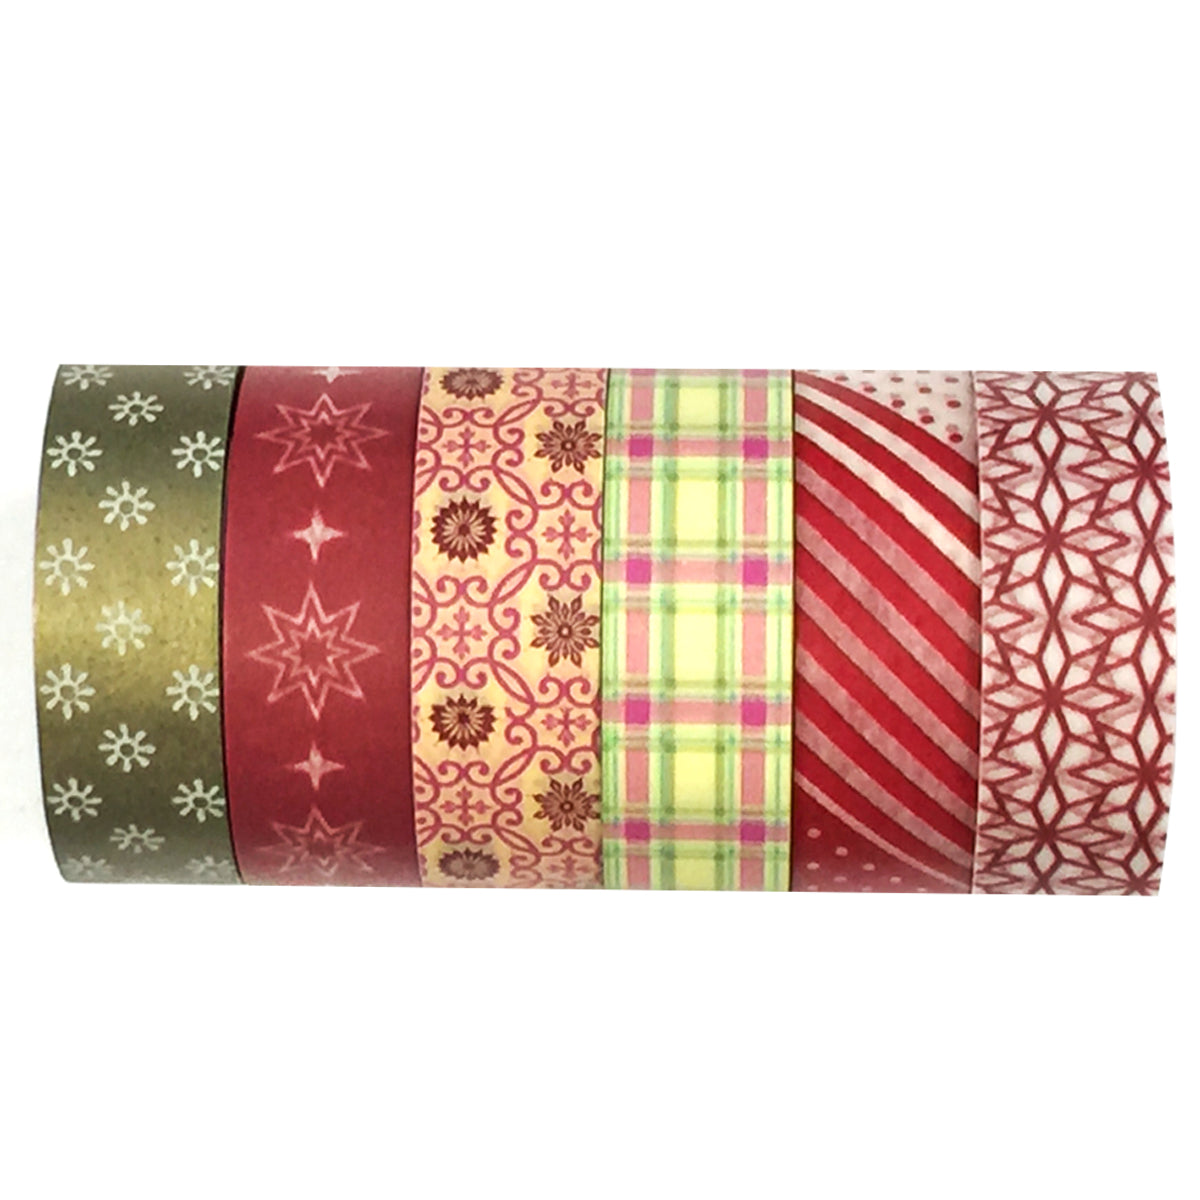 Washi Tape Assortment-Christmas Spectacular - mulberrycottage